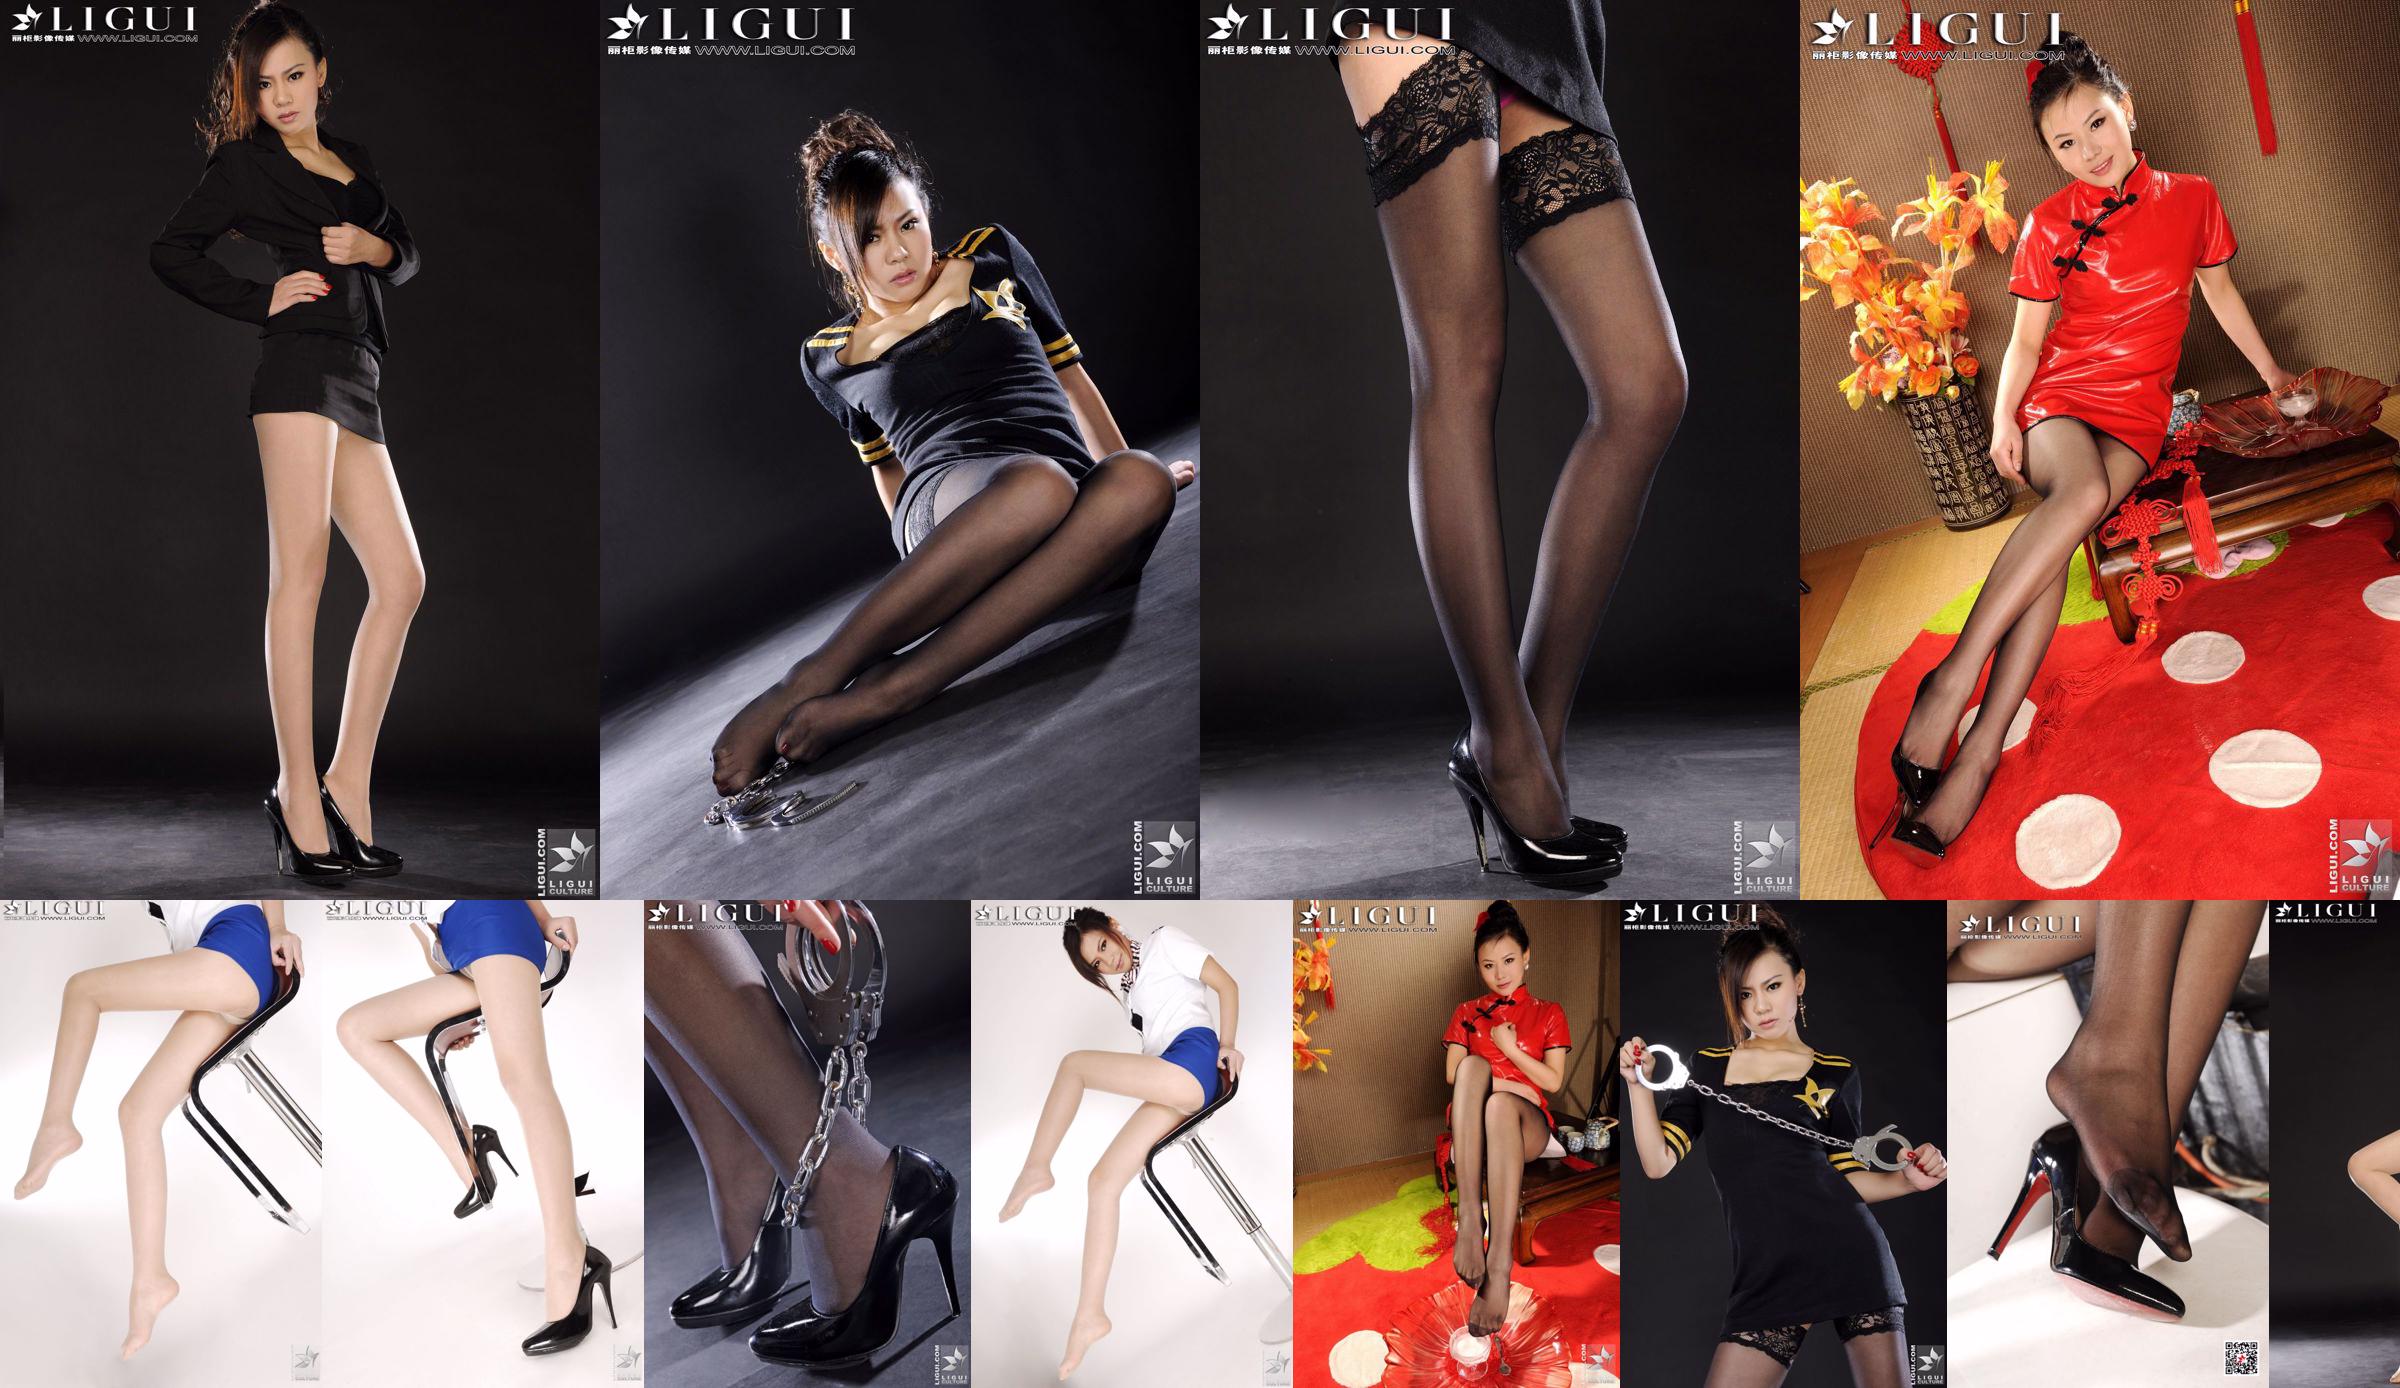 นางแบบโซฟี "ปี 2011 ผ้าไหมสีดำคลาสสิกพิเศษปีใหม่" [丽柜 LiGui] รูปถ่ายขาสวยและเท้าหยก No.616895 หน้า 4